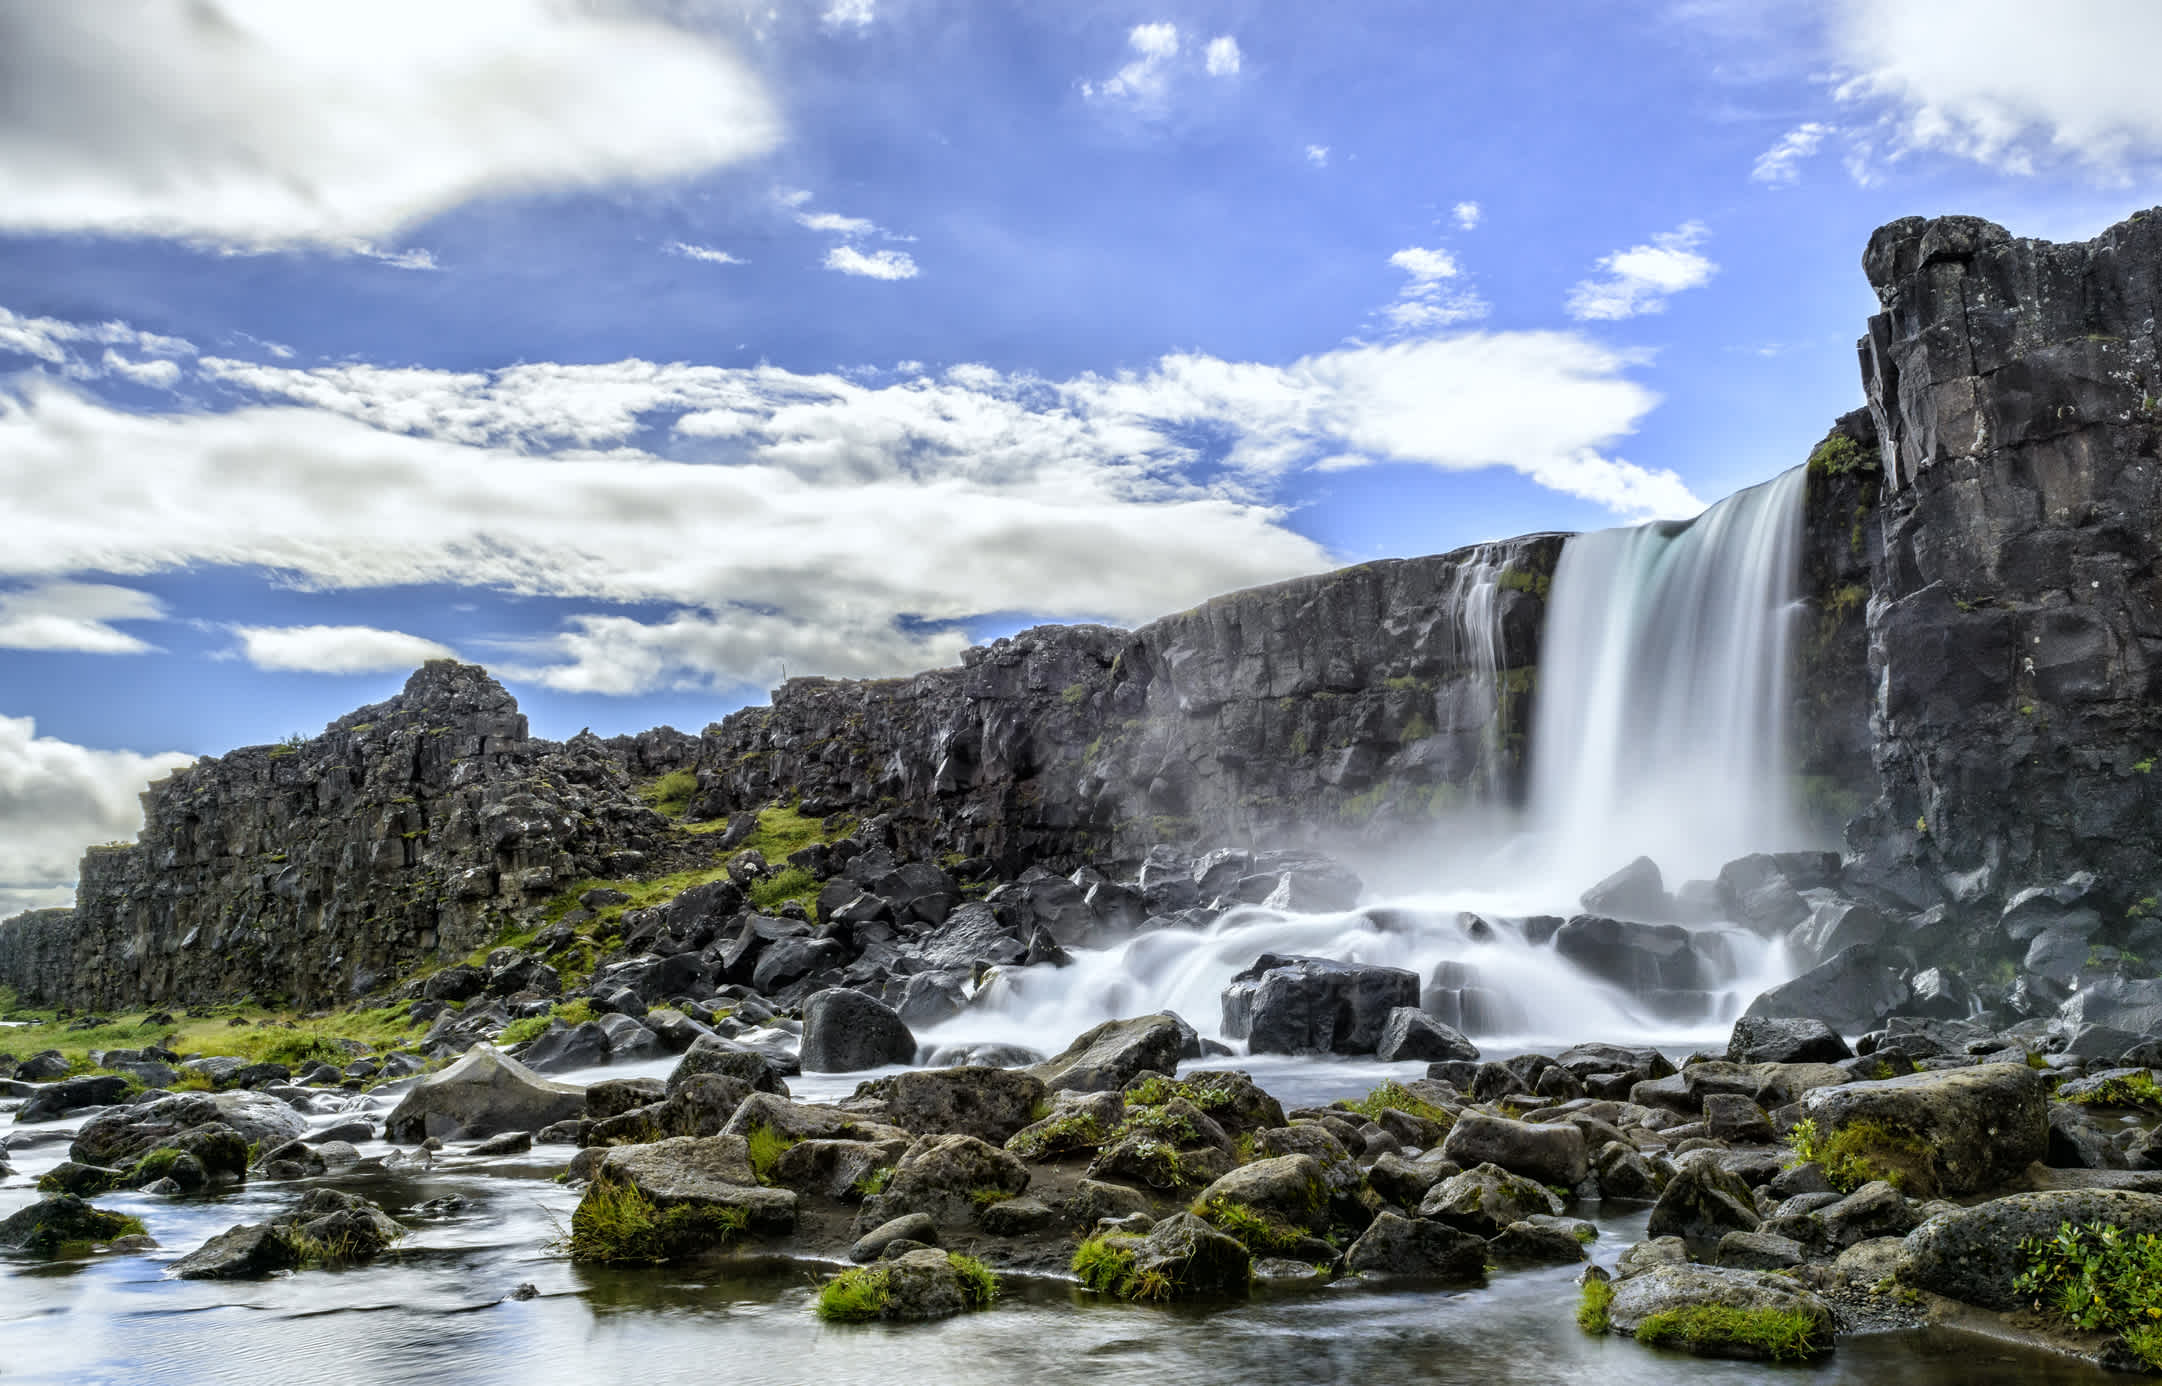 La cascade d'Oxararfoss dans le parc national de Thingvellir, en Islande.

